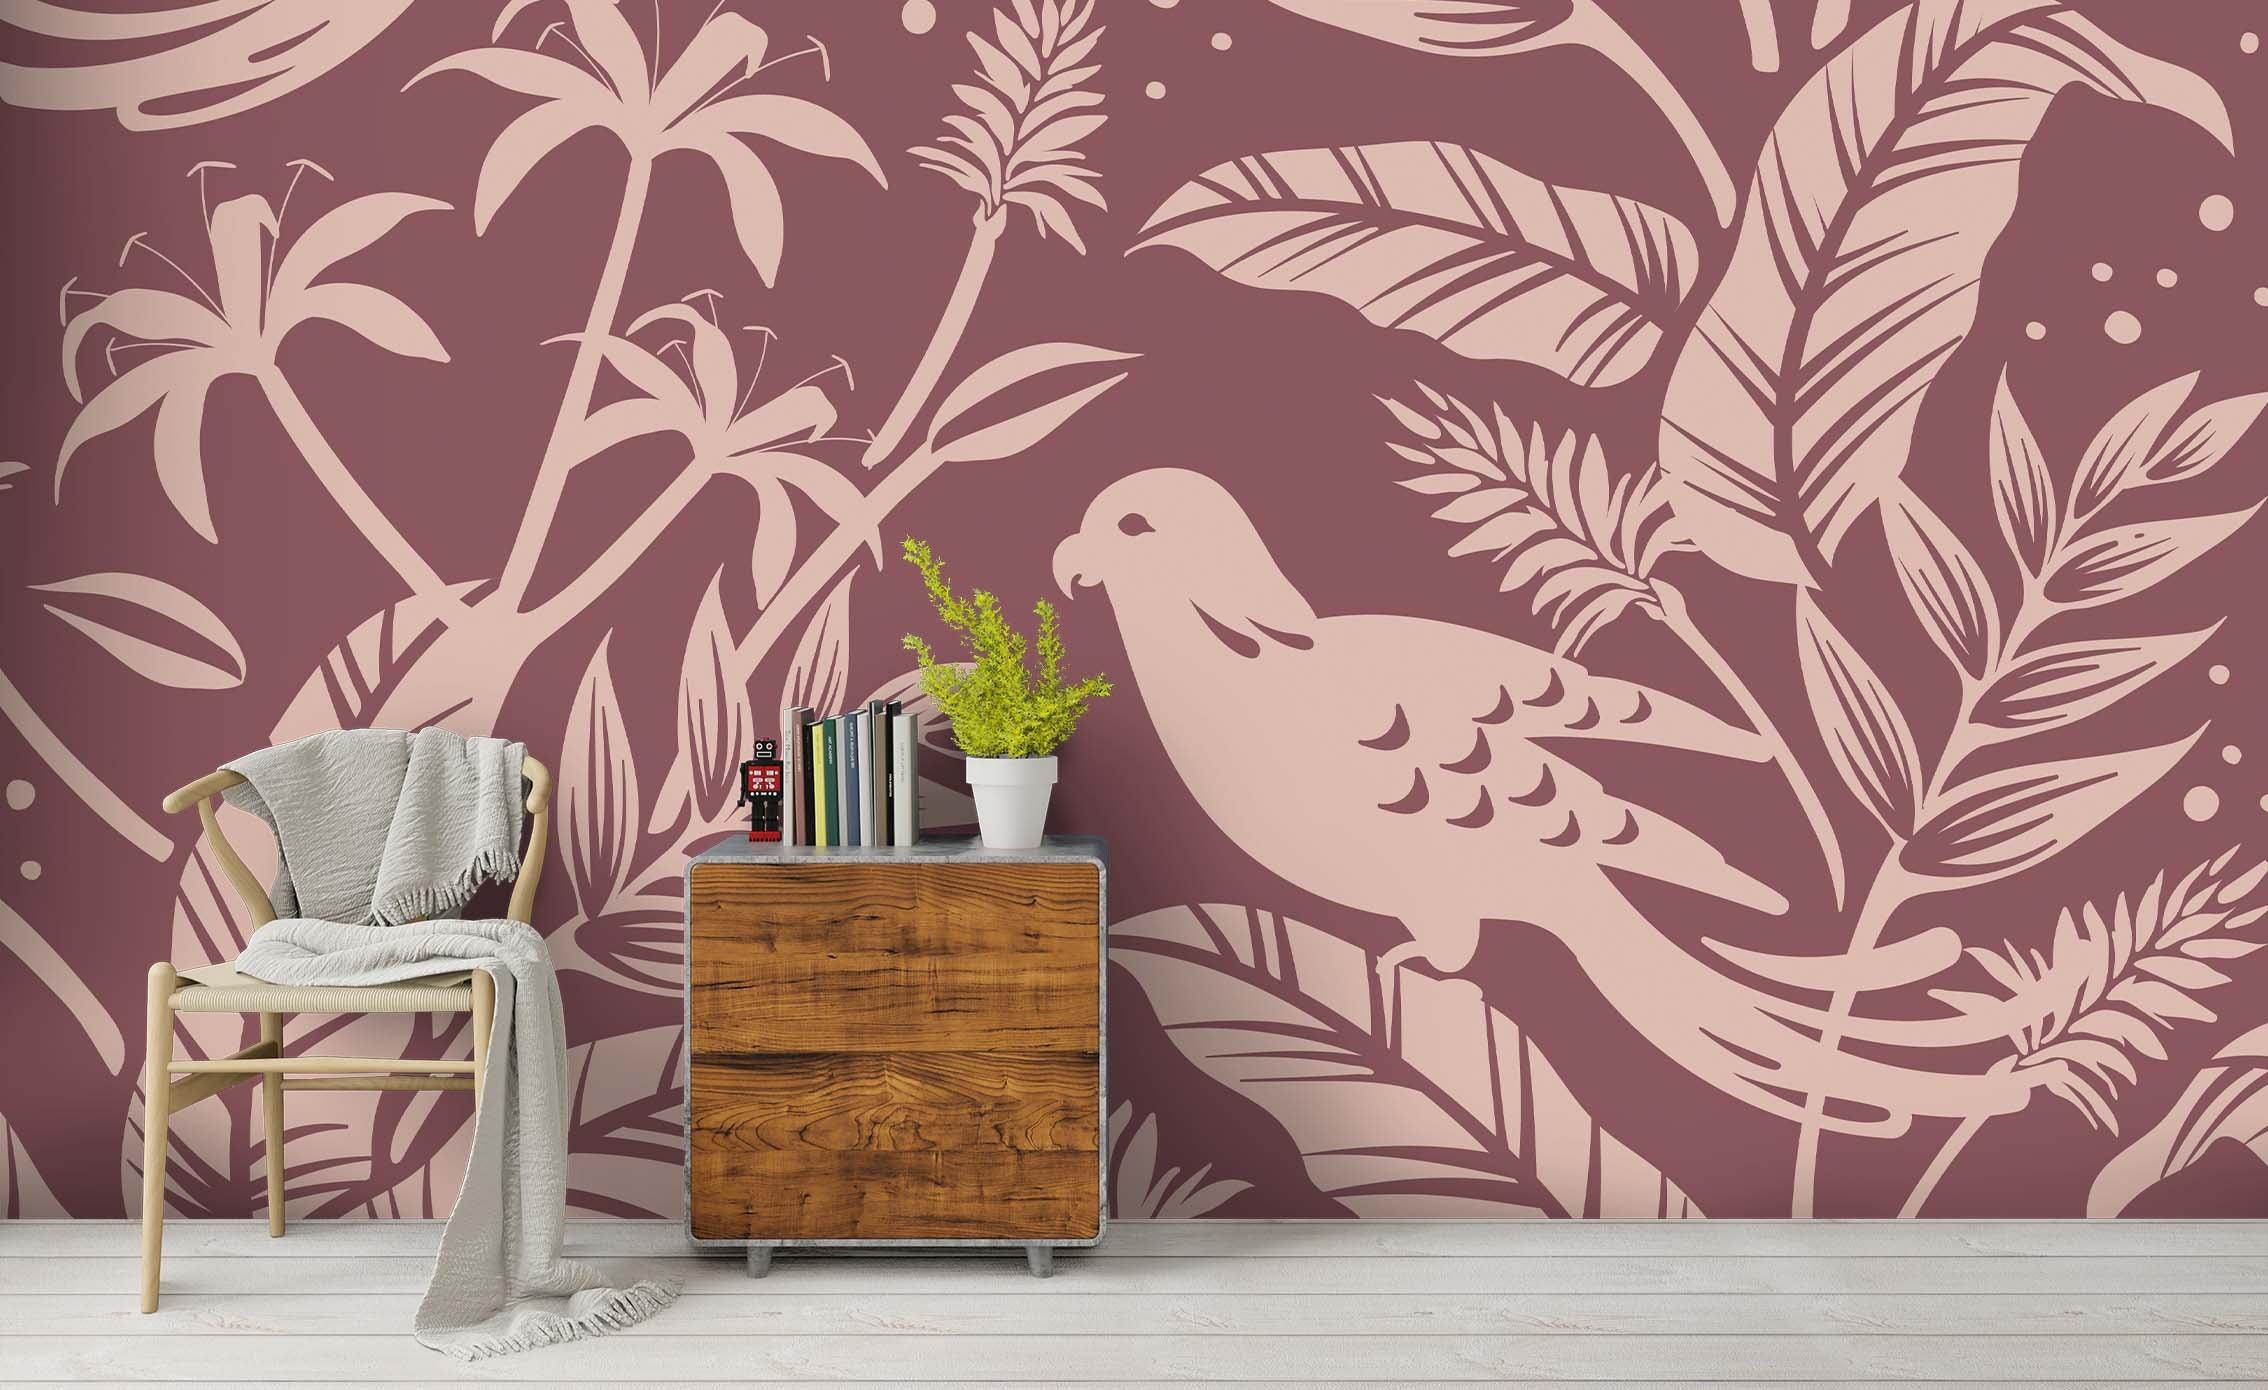 3D Brown White Freehand Sketching Bird Flower Wall Mural Wallpaper ZY D93- Jess Art Decoration